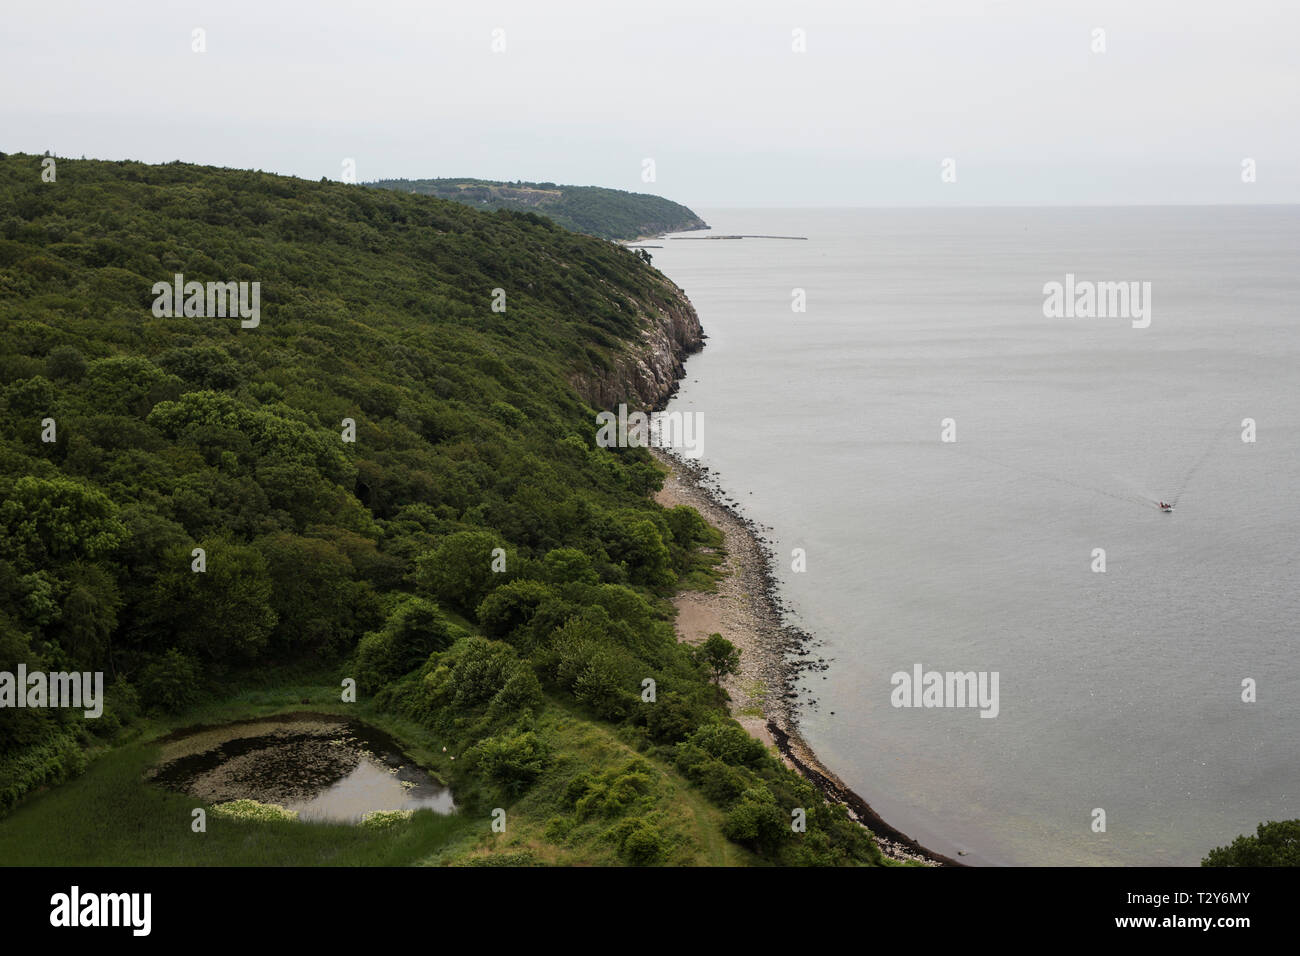 La vista della costa del promontorio di Hammeren dalle rovine della fortezza di Hammershus vicino ad Allinge sull'isola di Bornholm in Danimarca, nel Mar Baltico. Foto Stock